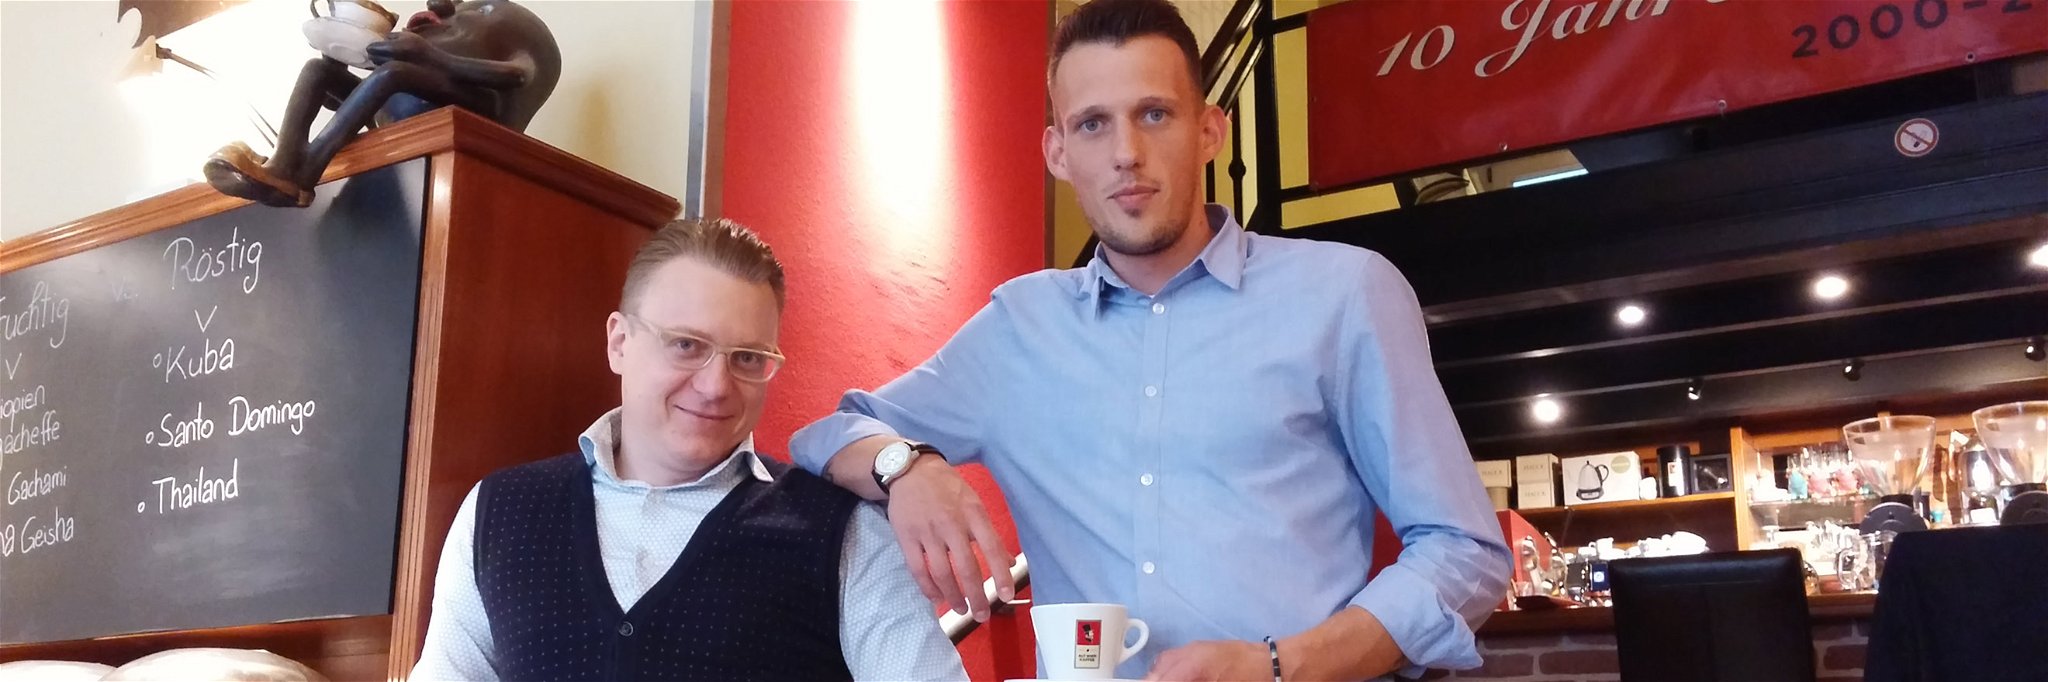 Patrick Hopf und Daniel Kellner bei der Verkostung einer eigenen Mischung der Kaffeerösterei Alt Wien.